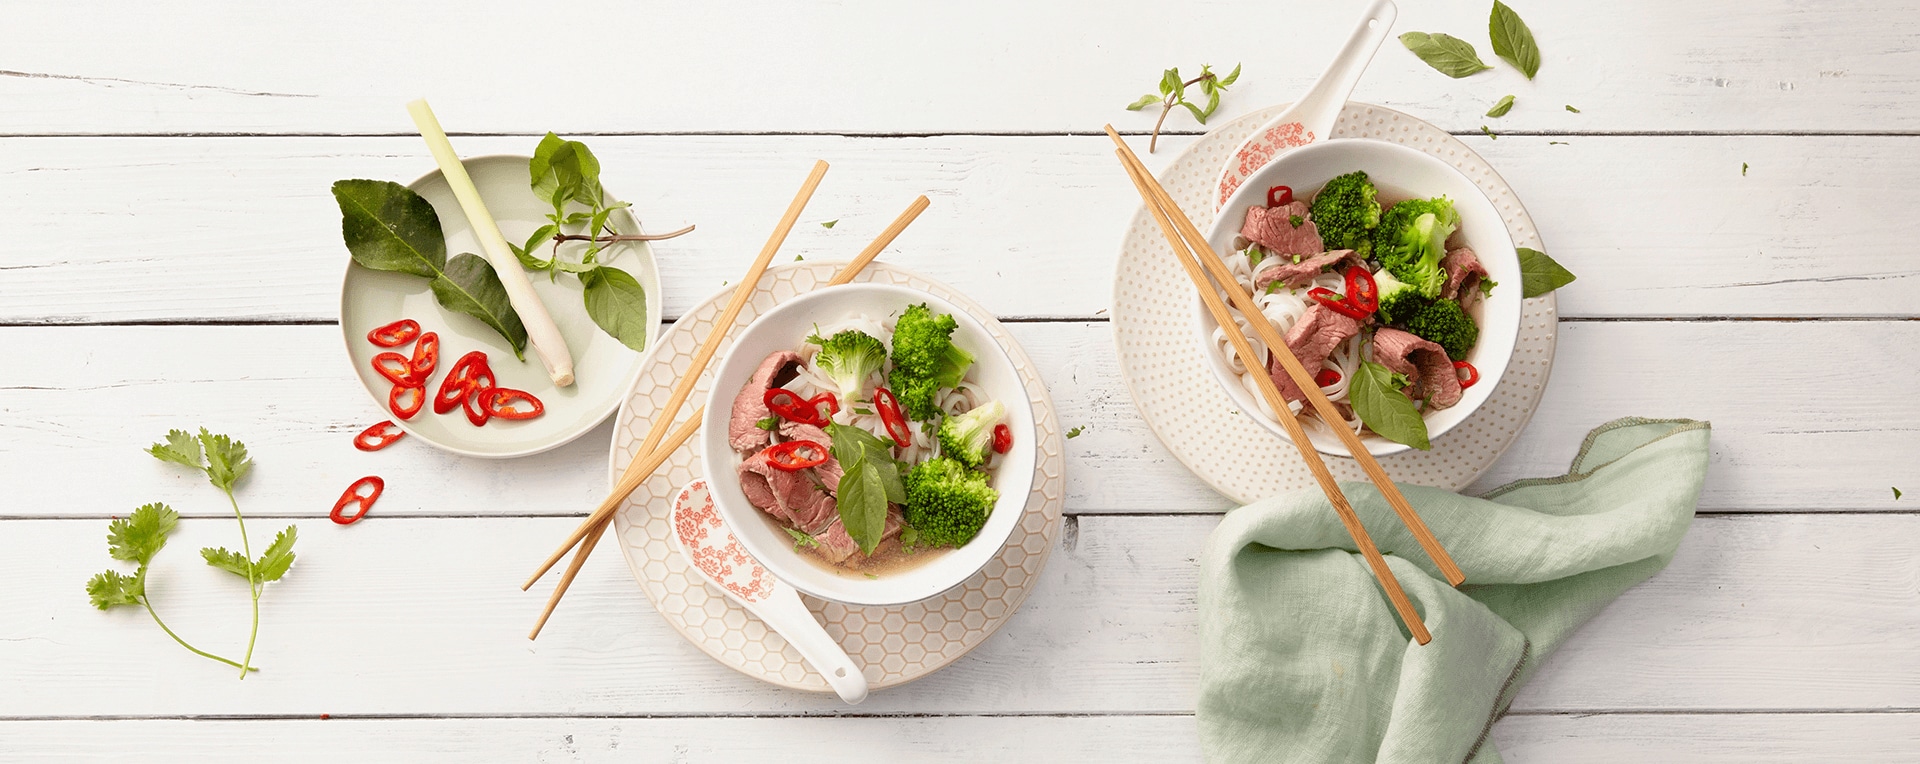 Asiatische Reisnudelsuppe mit Rindfleisch und Brokkoli